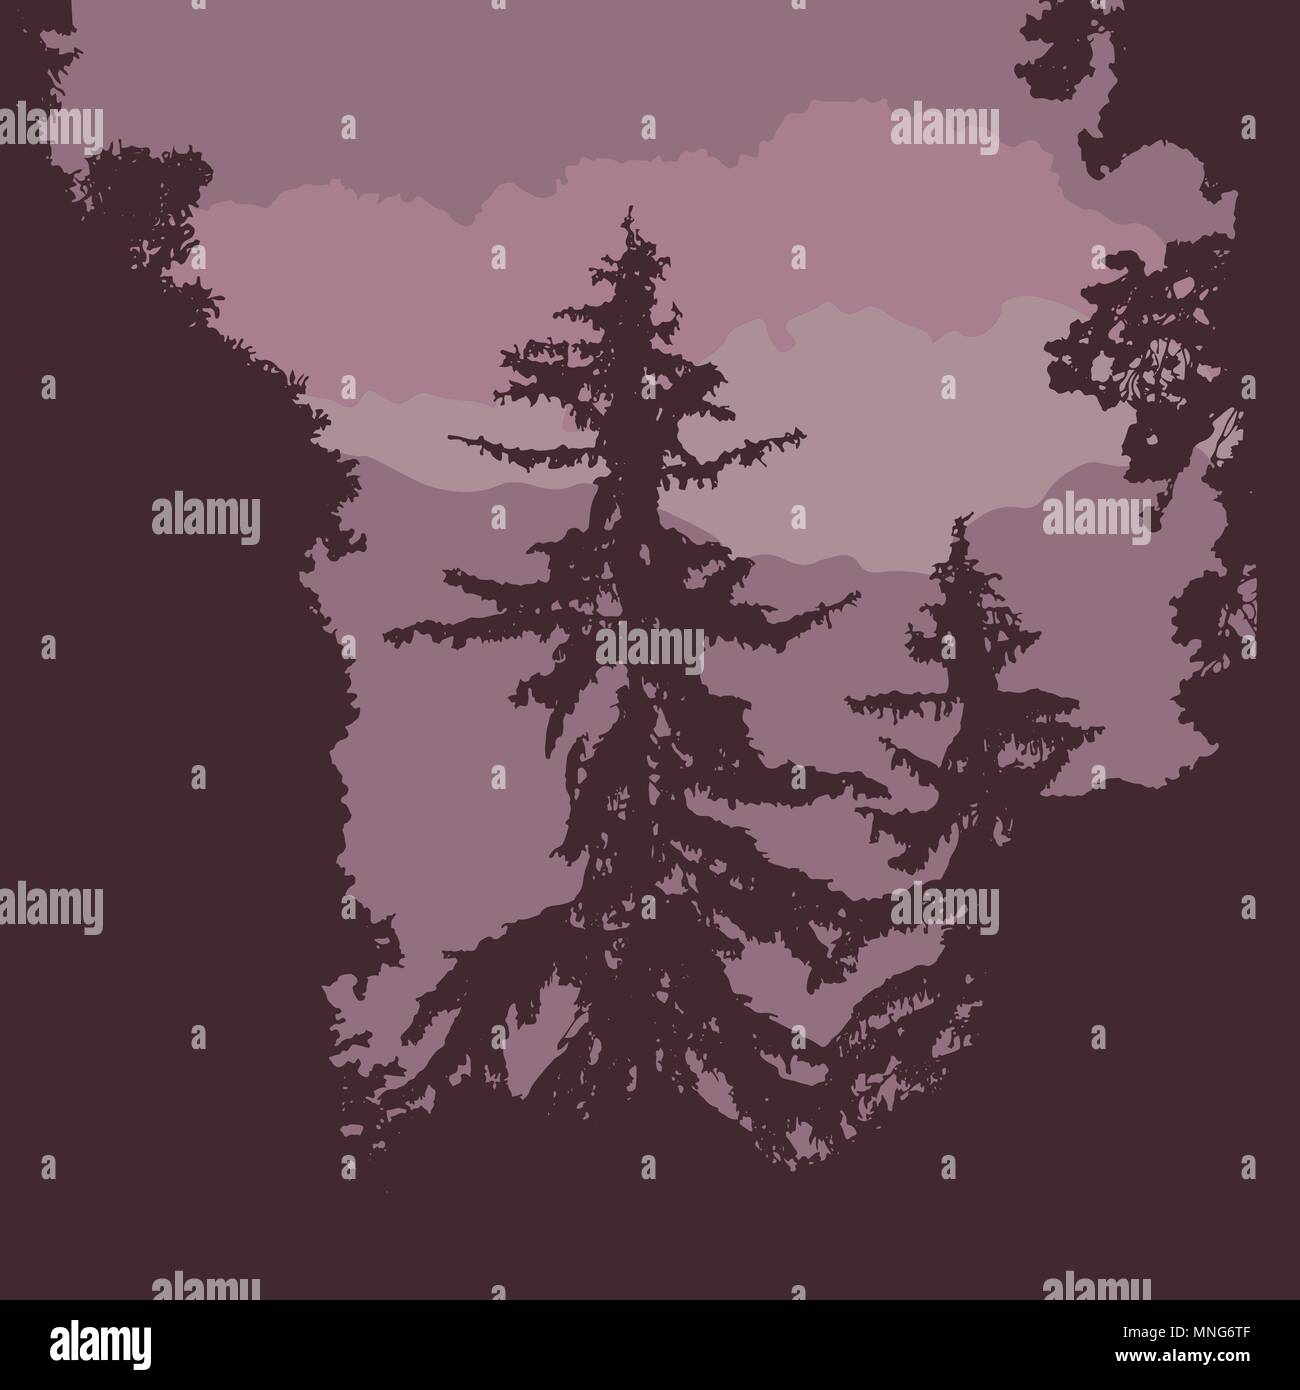 Vektor Silhouette eines Waldes mit Nadelbäumen, unter einem violetten Himmel mit Wolken, mit Platz für Ihren Text Stock Vektor